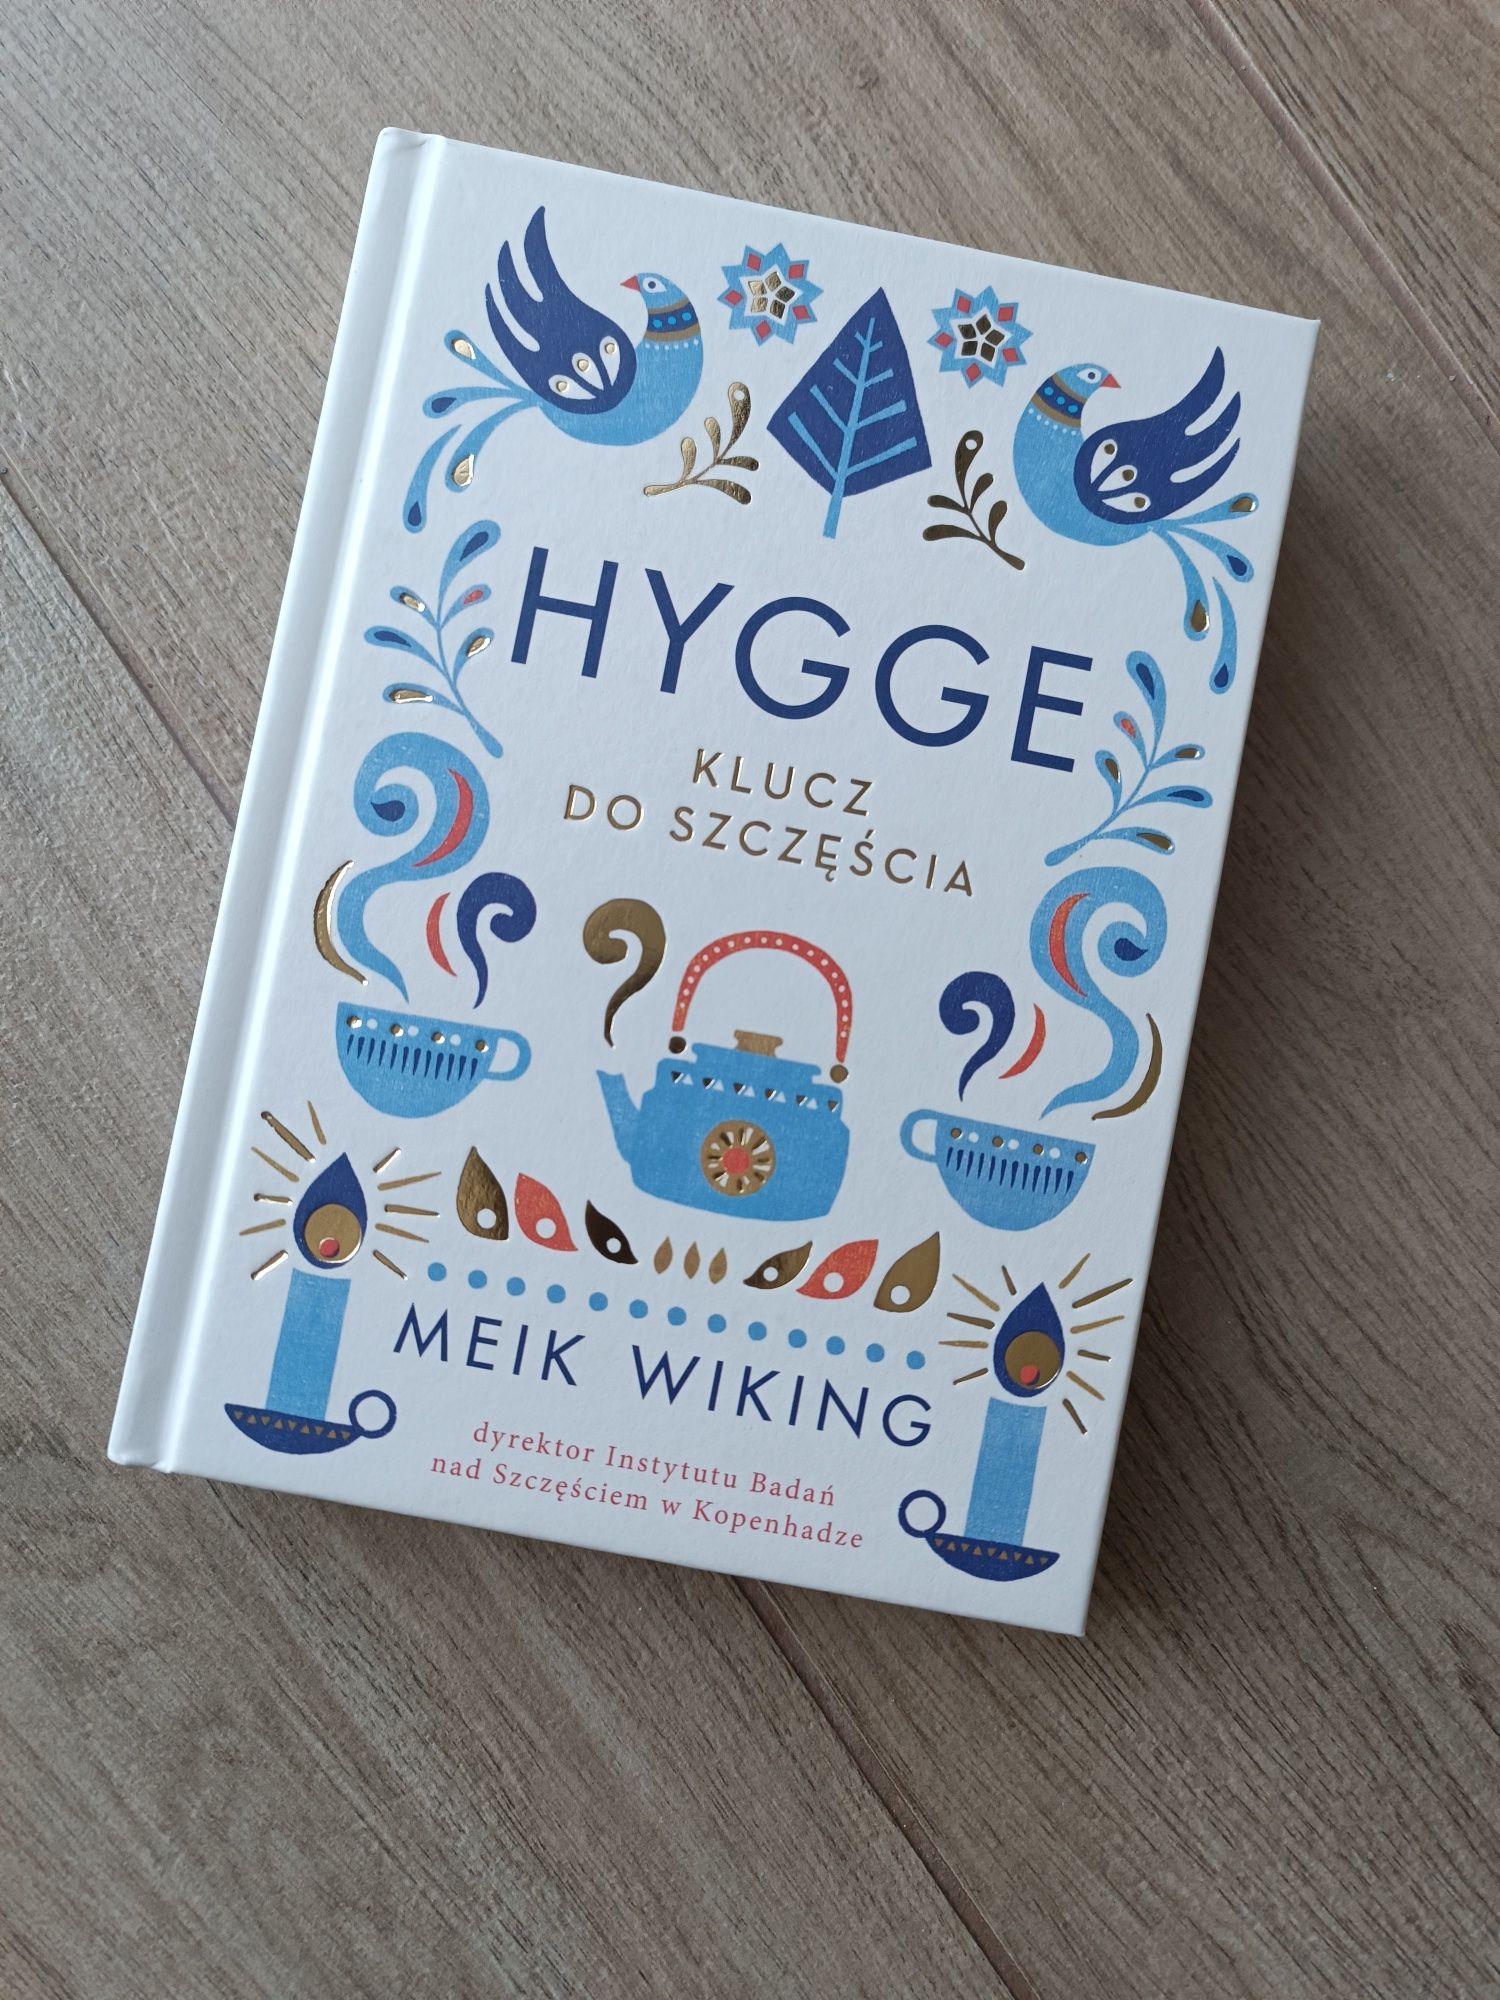 Nowa książka "Hygge - Klucz do szczęścia" Meik Wiking